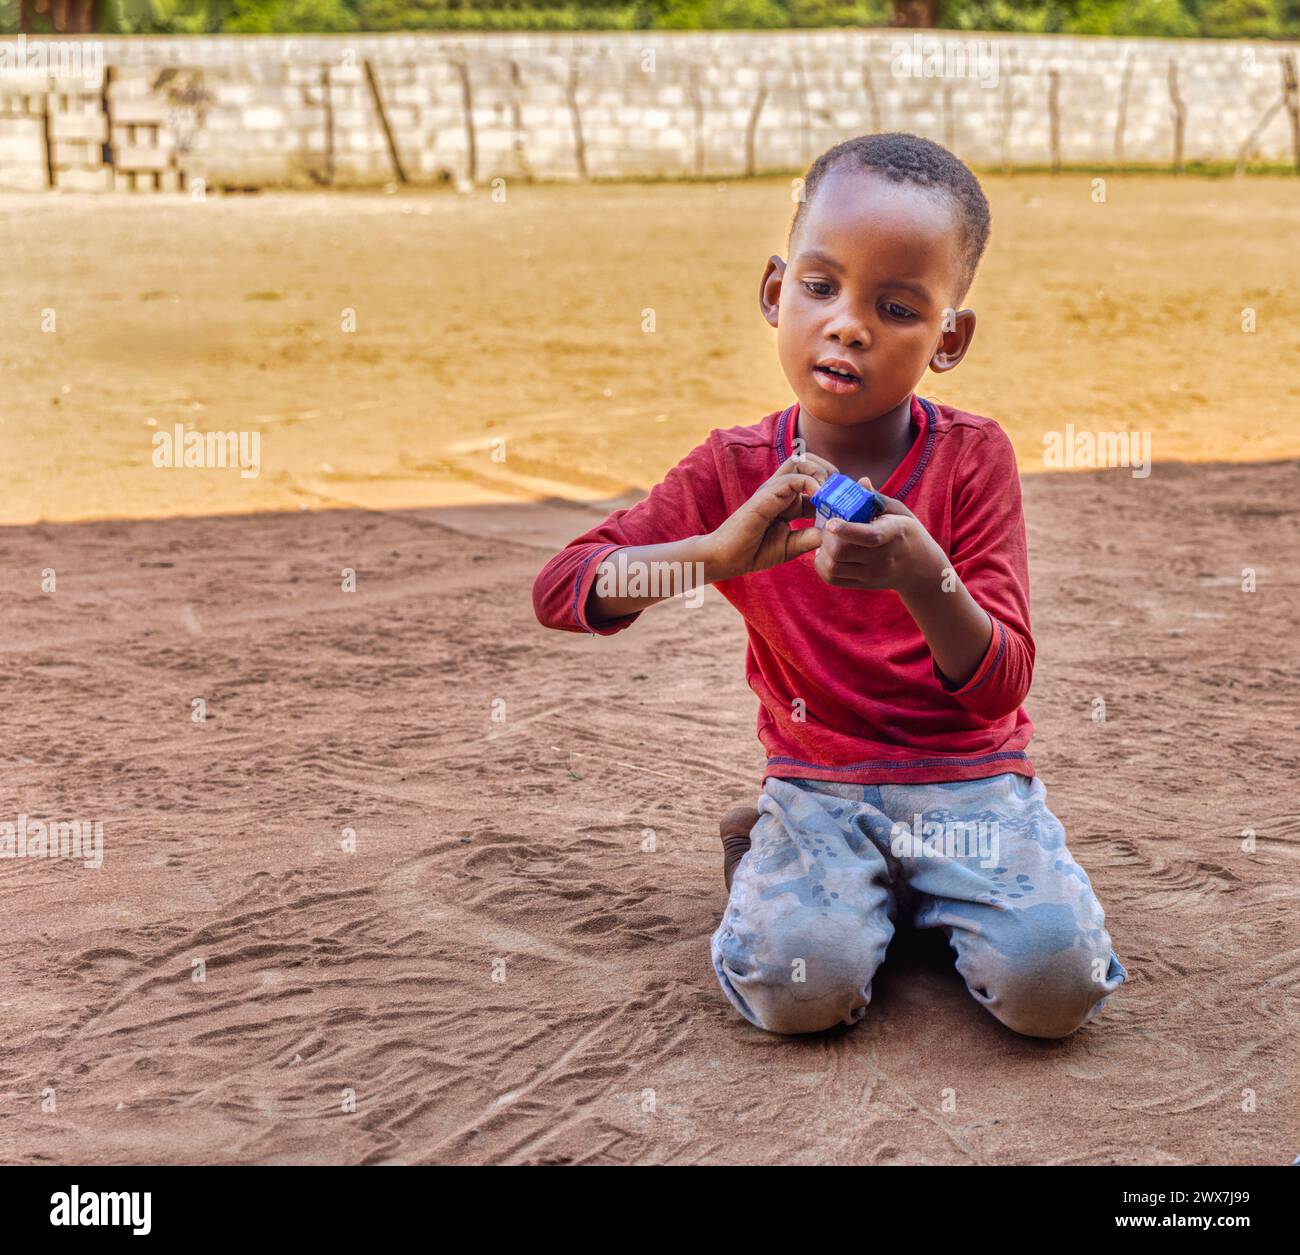 enfant africain jouant avec une voiture jouet dans le sable dans la cour, vie de village africain Banque D'Images